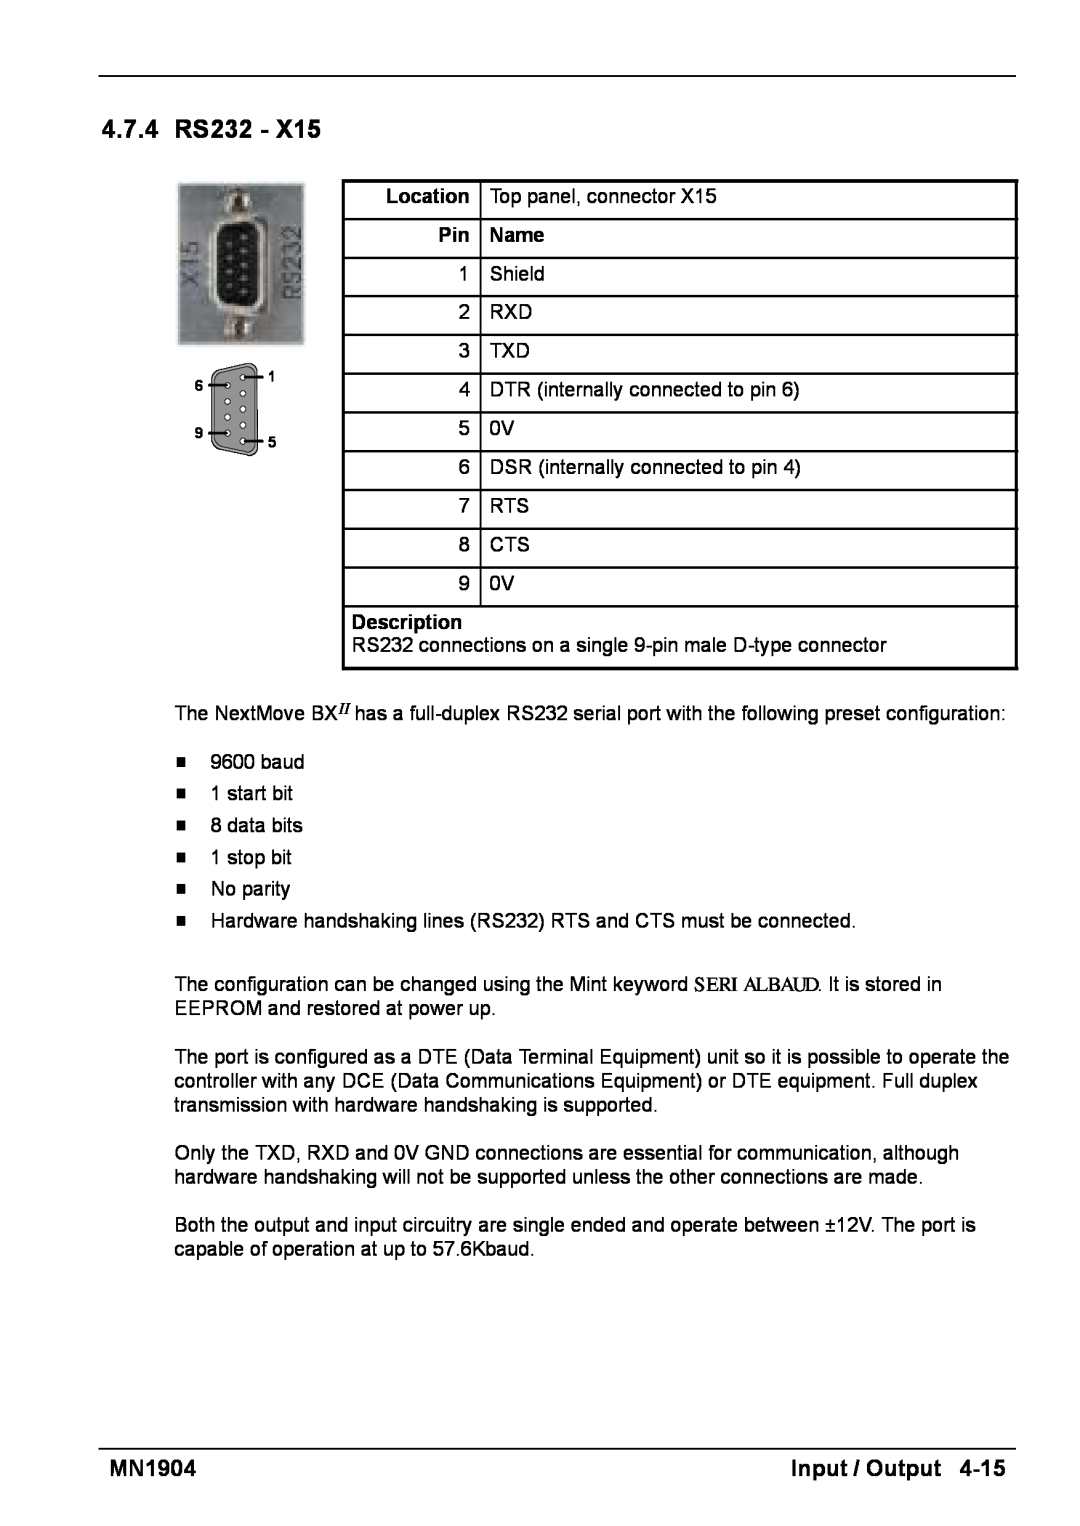 Baldor BXII installation manual 4.7.4 RS232, Pin Name, Description 